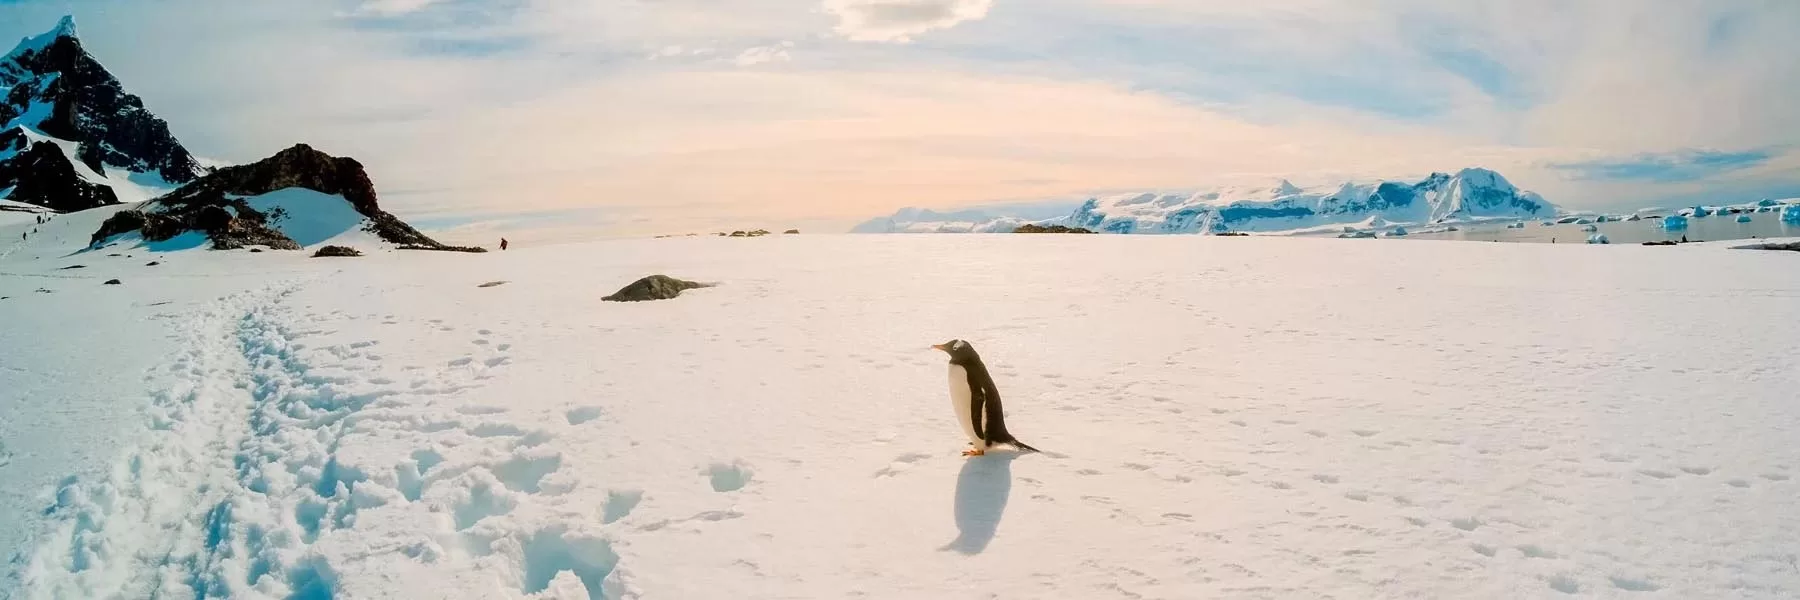 Penguin species of Antarctica